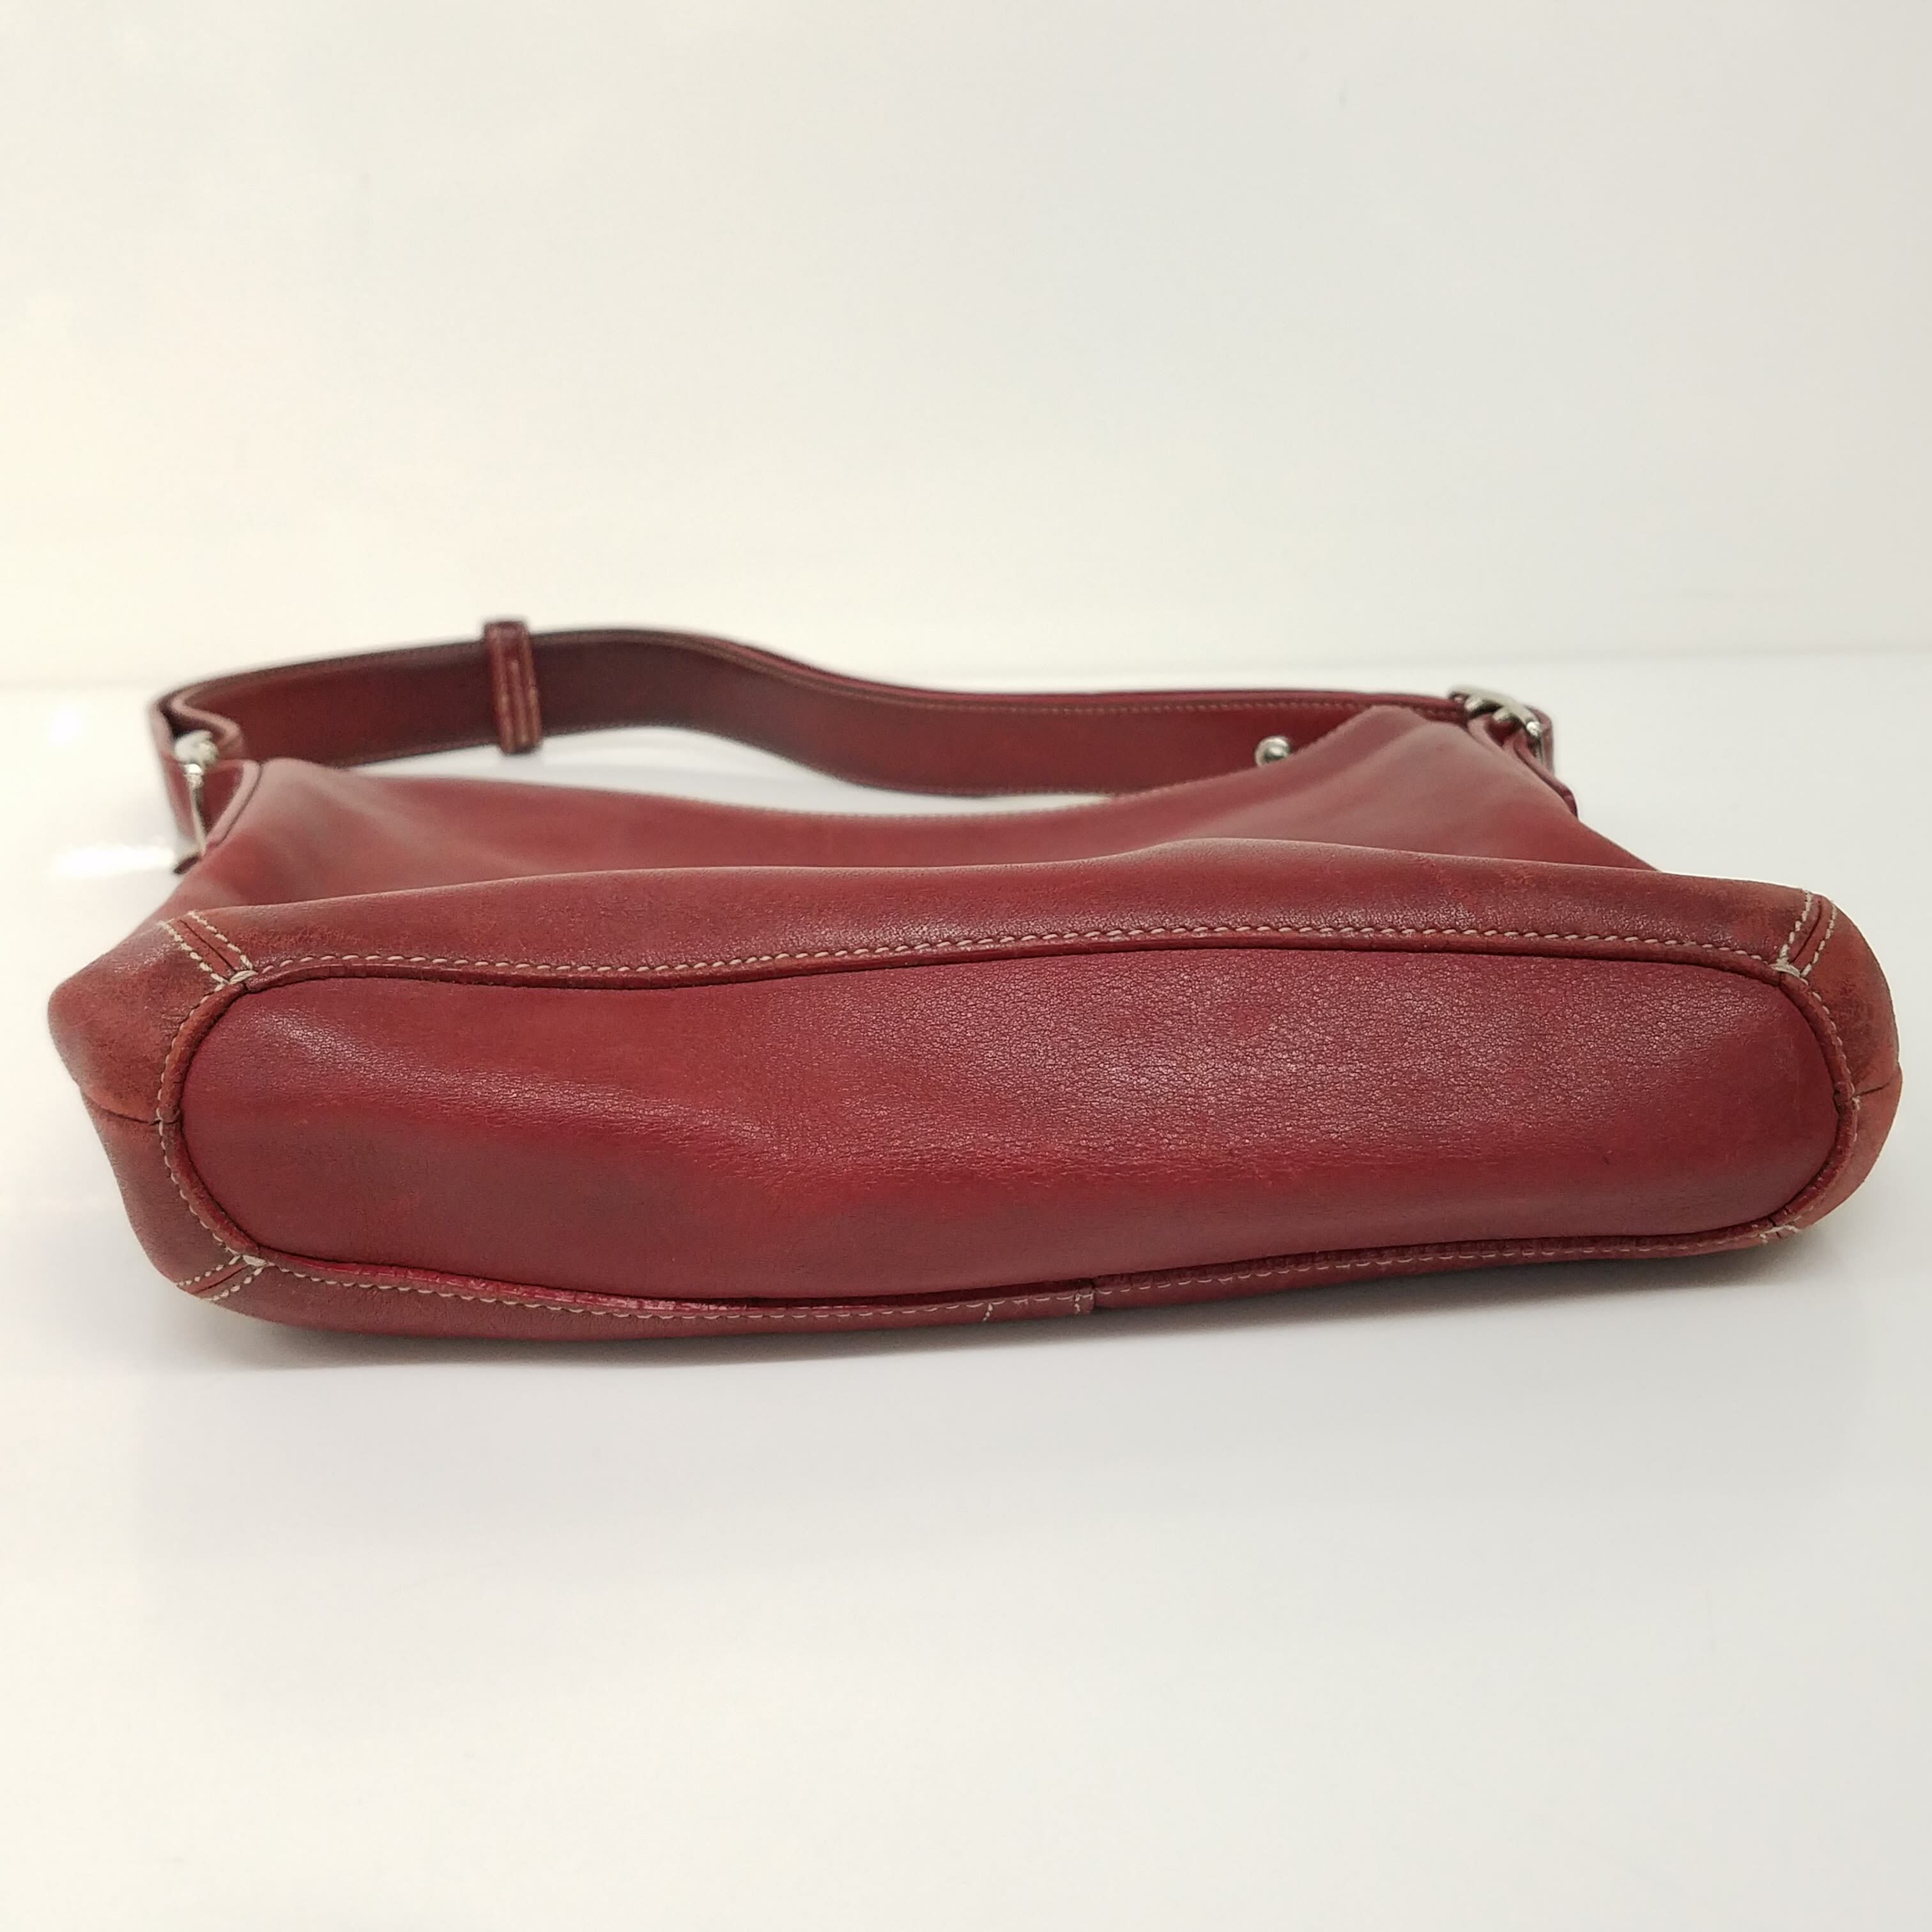 COACH Vintage LEGACY Red Leather Tote Shoulder Business Bag 9426 Large |  eBay